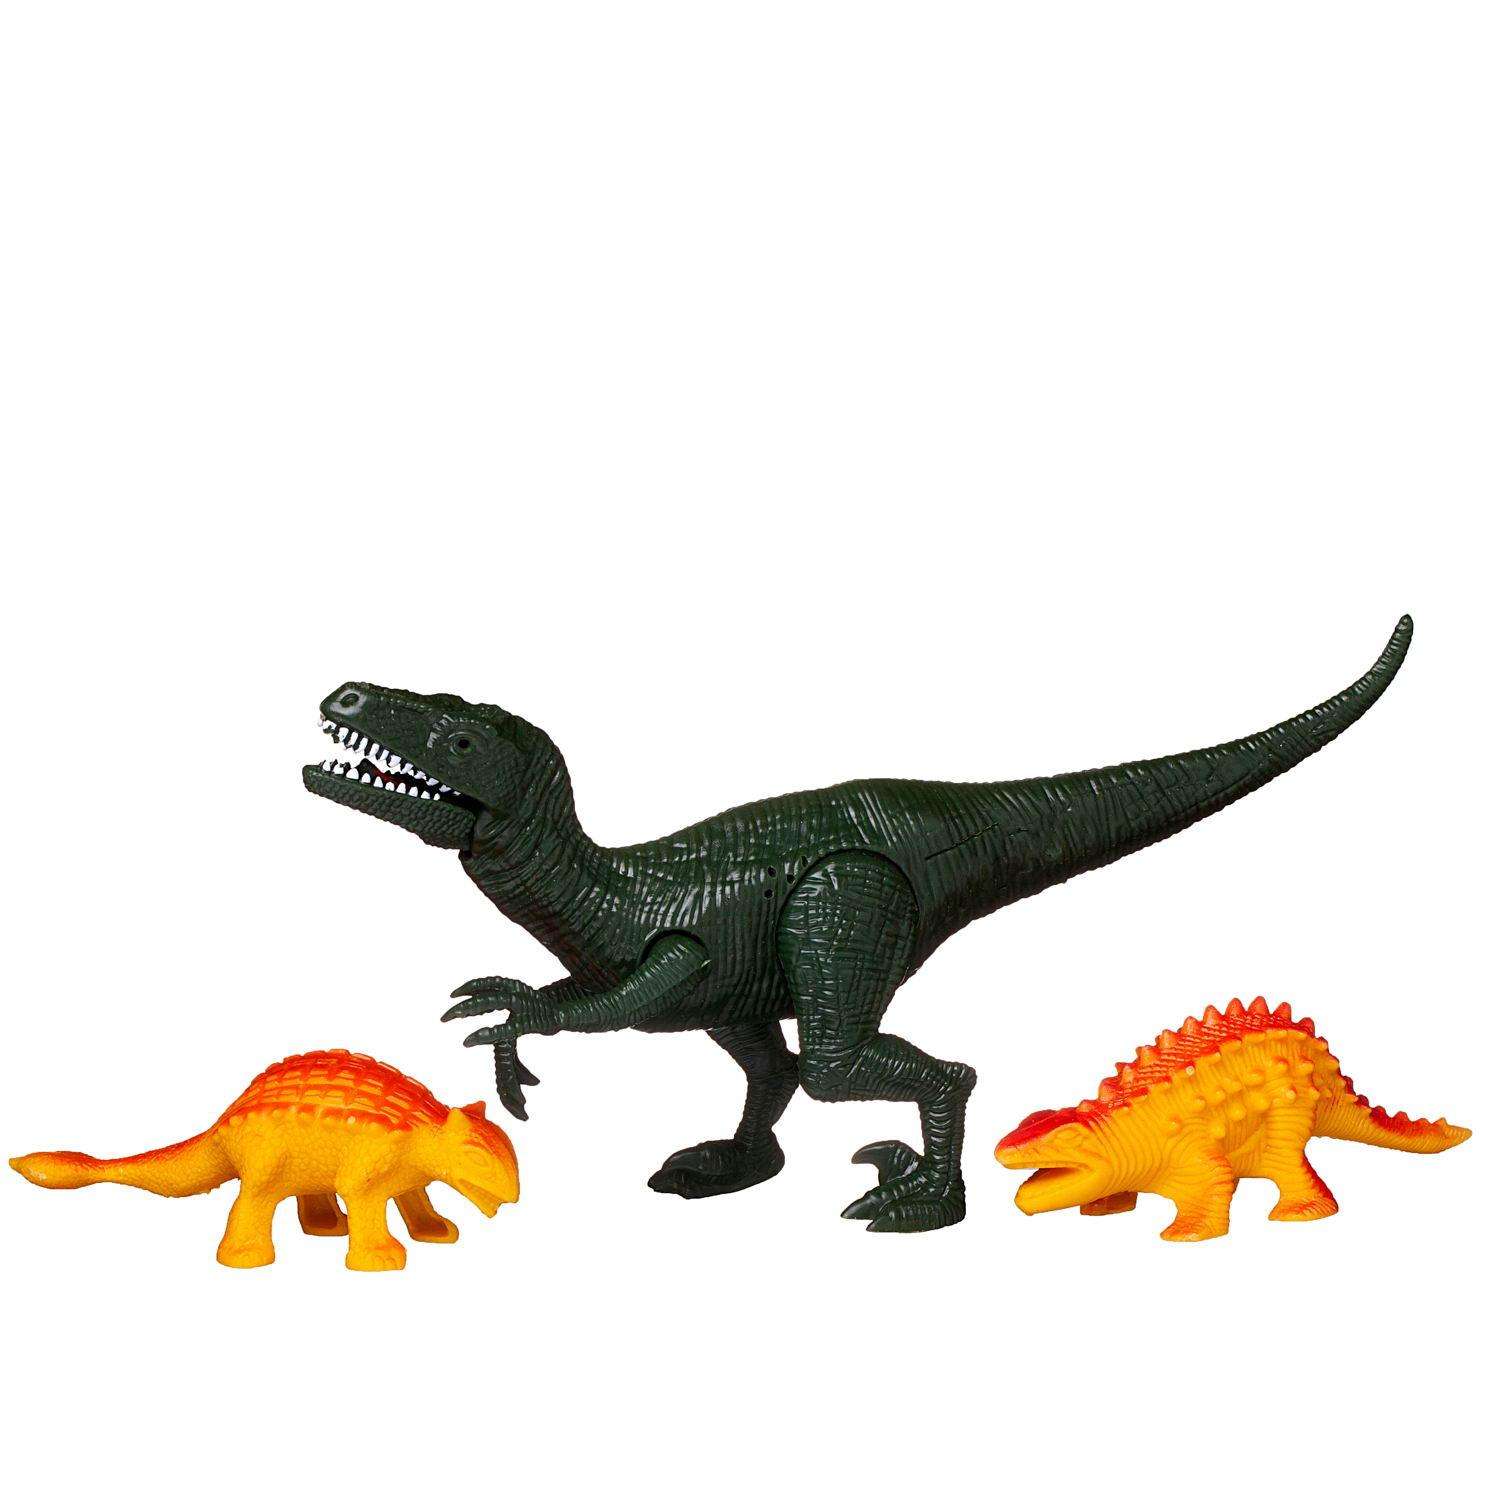 Игровой набор Junfa Динозавры 1 большой зеленый 2 маленьких динозавра детали для сборки свет звук - фото 4